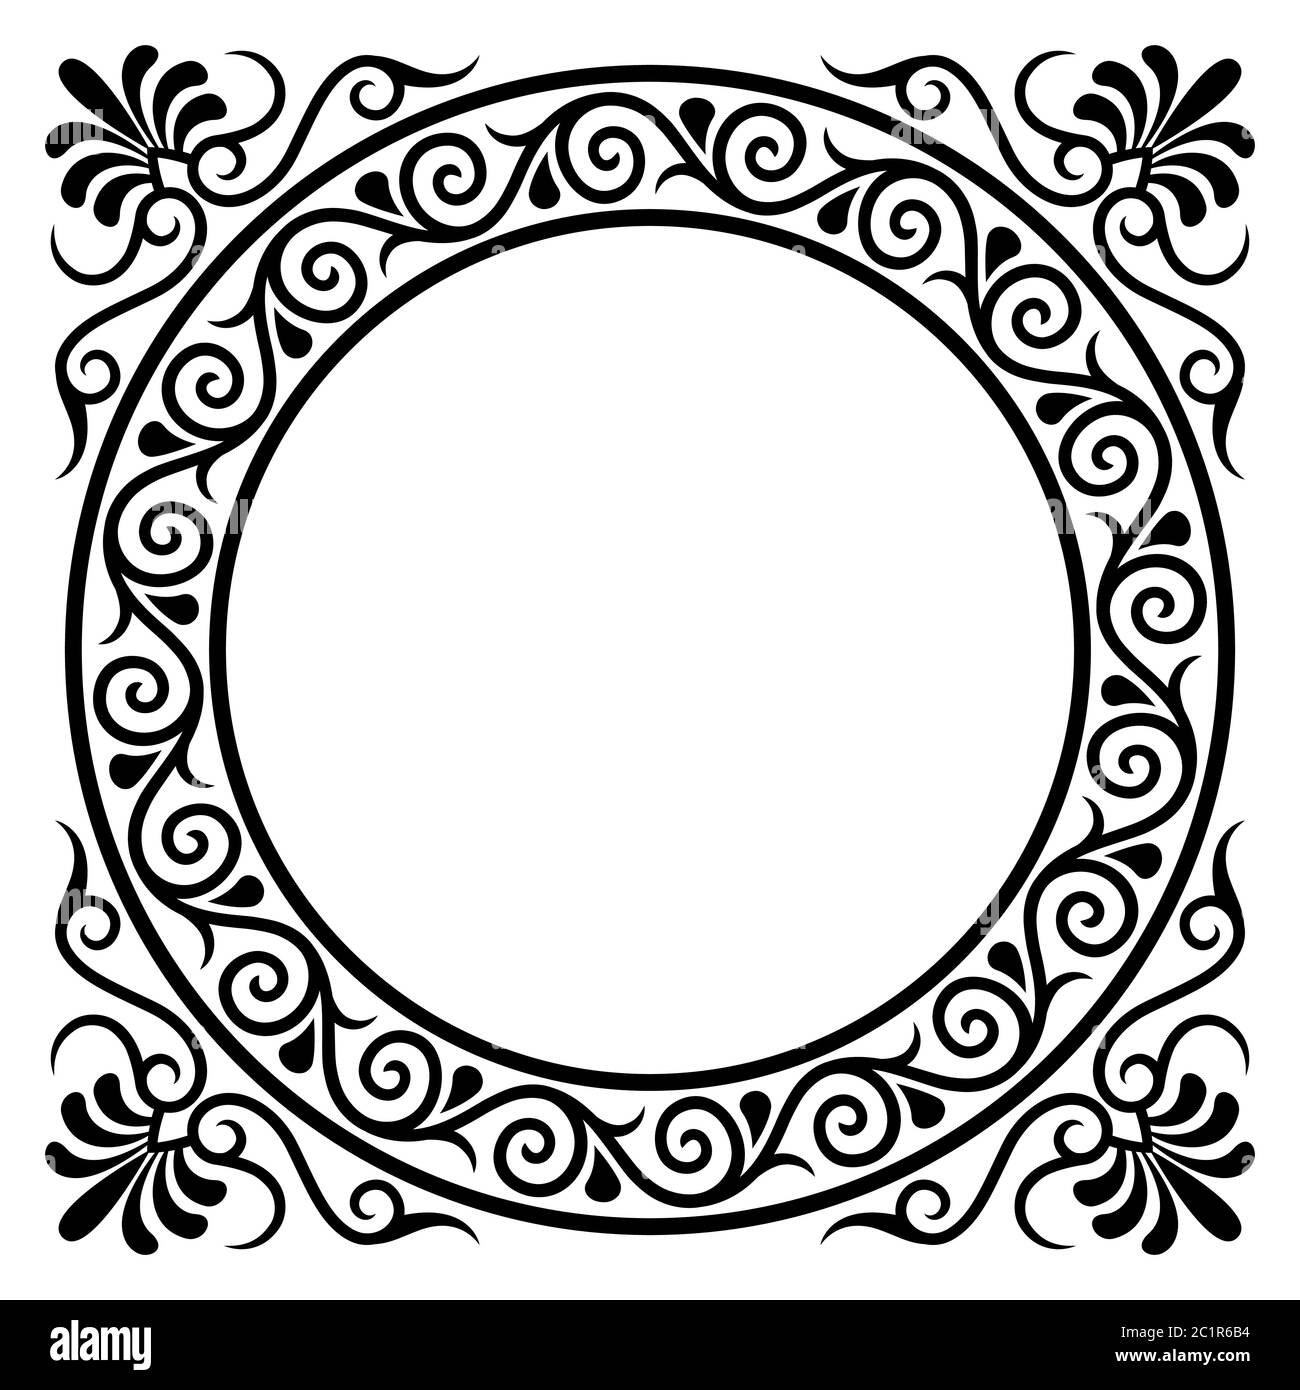 Blck vintage circle frame stock vector. Illustration of pattern